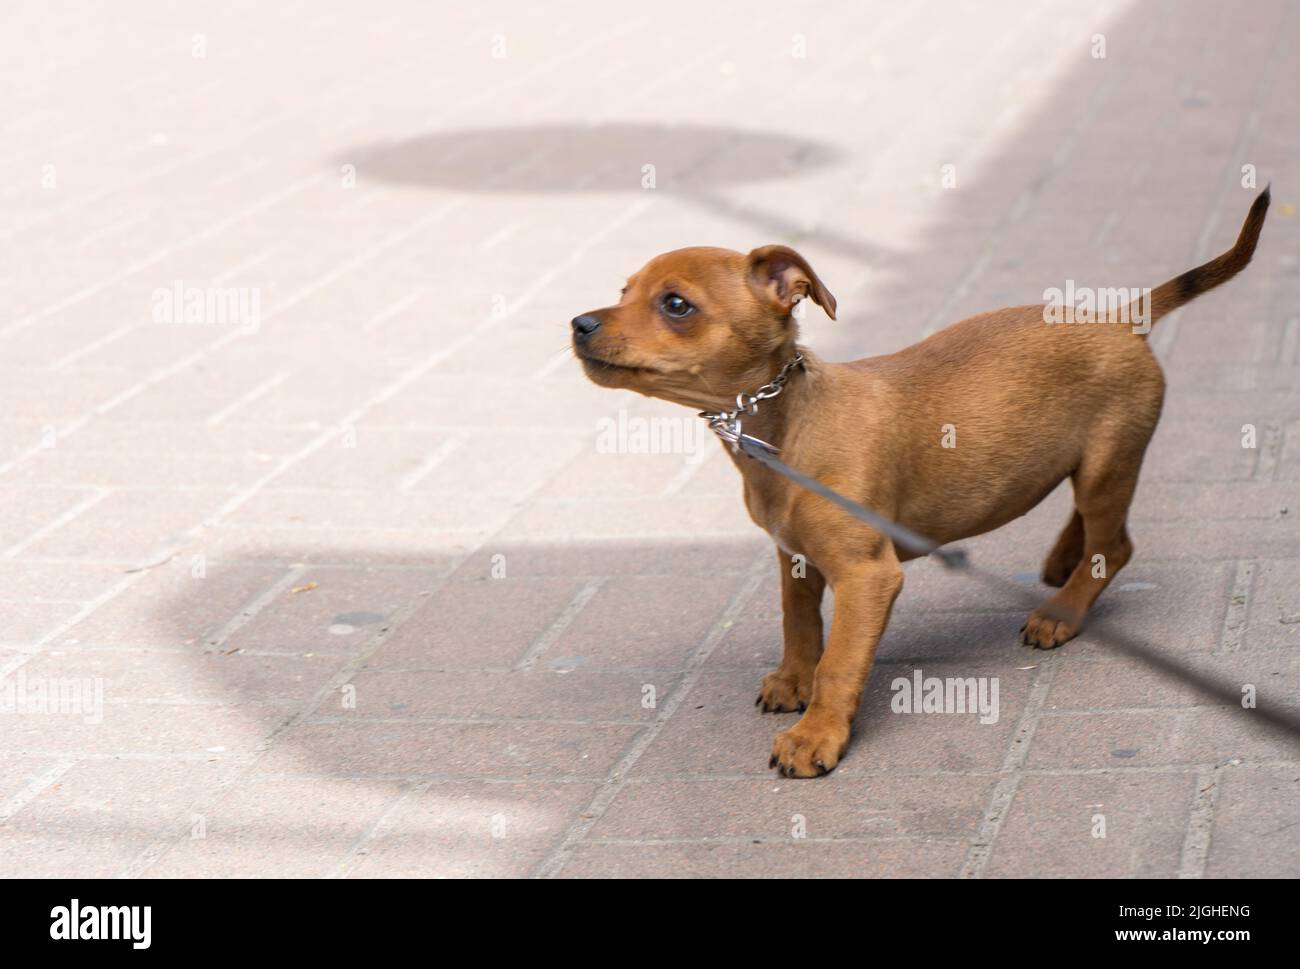 Un petit chien mignon dans la rue, qui a l'air triste, inquiet, inquiet, anxieux, inquiet, mal à l'aise, stressé, nerveux. Copier-coller, cruauté envers les animaux Banque D'Images